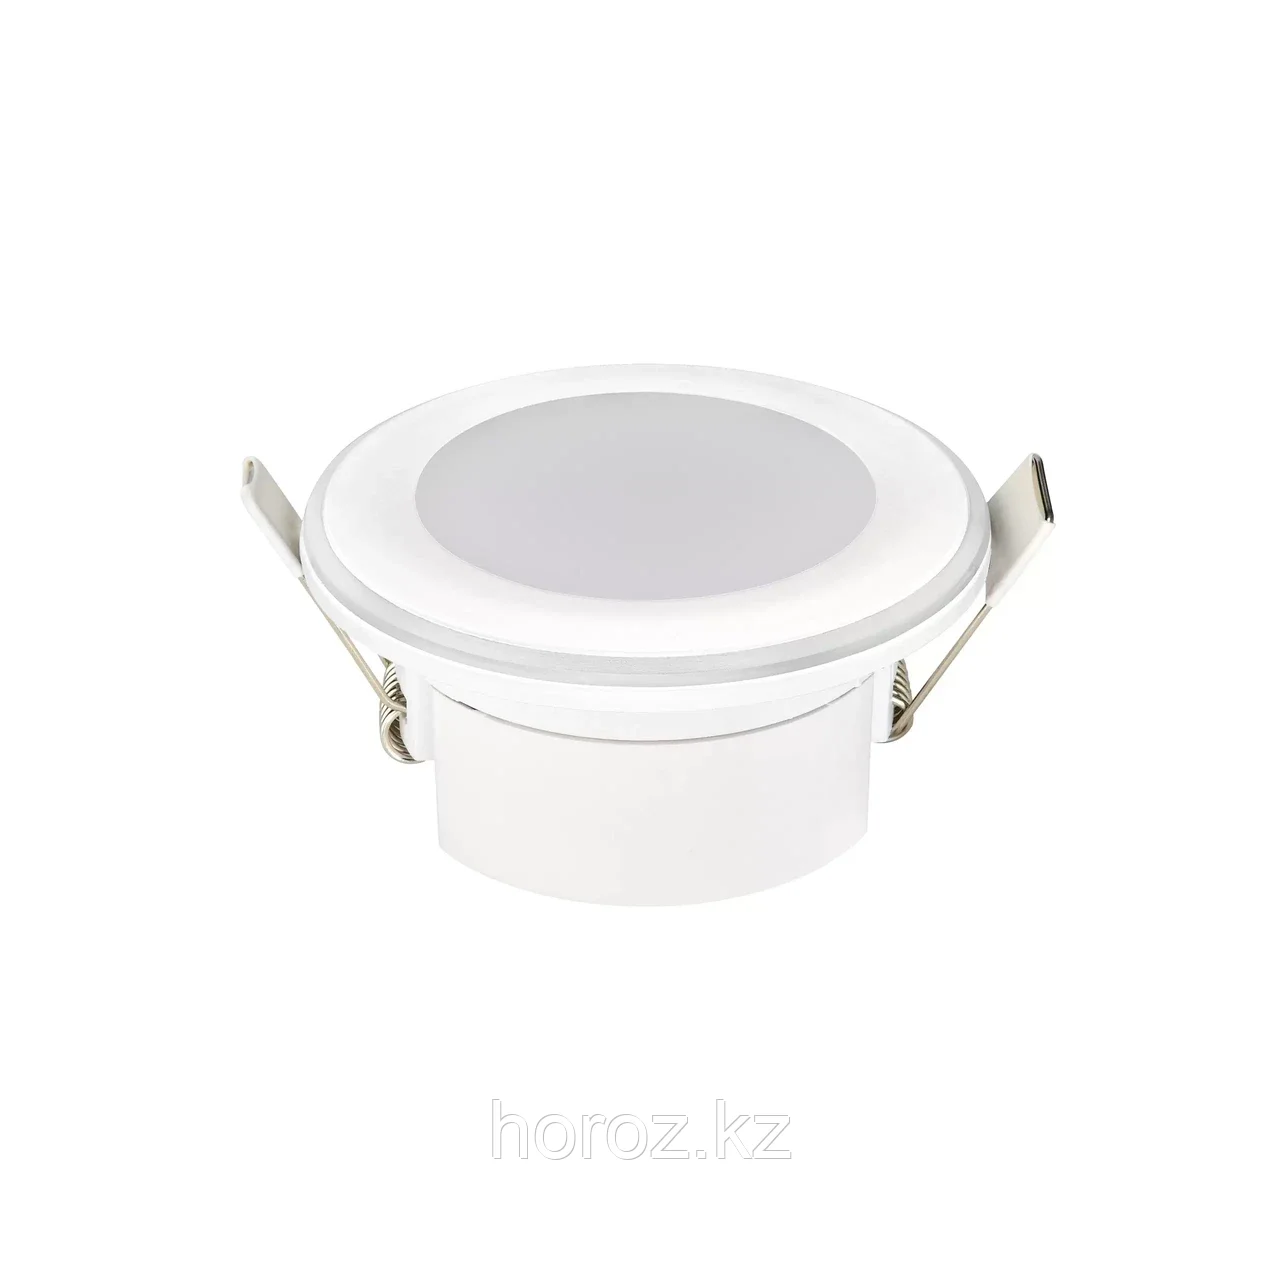 Светильник LED Horoz PARKER-5 5W круглый встраиваемый 4200К Белый (016 071 0005)